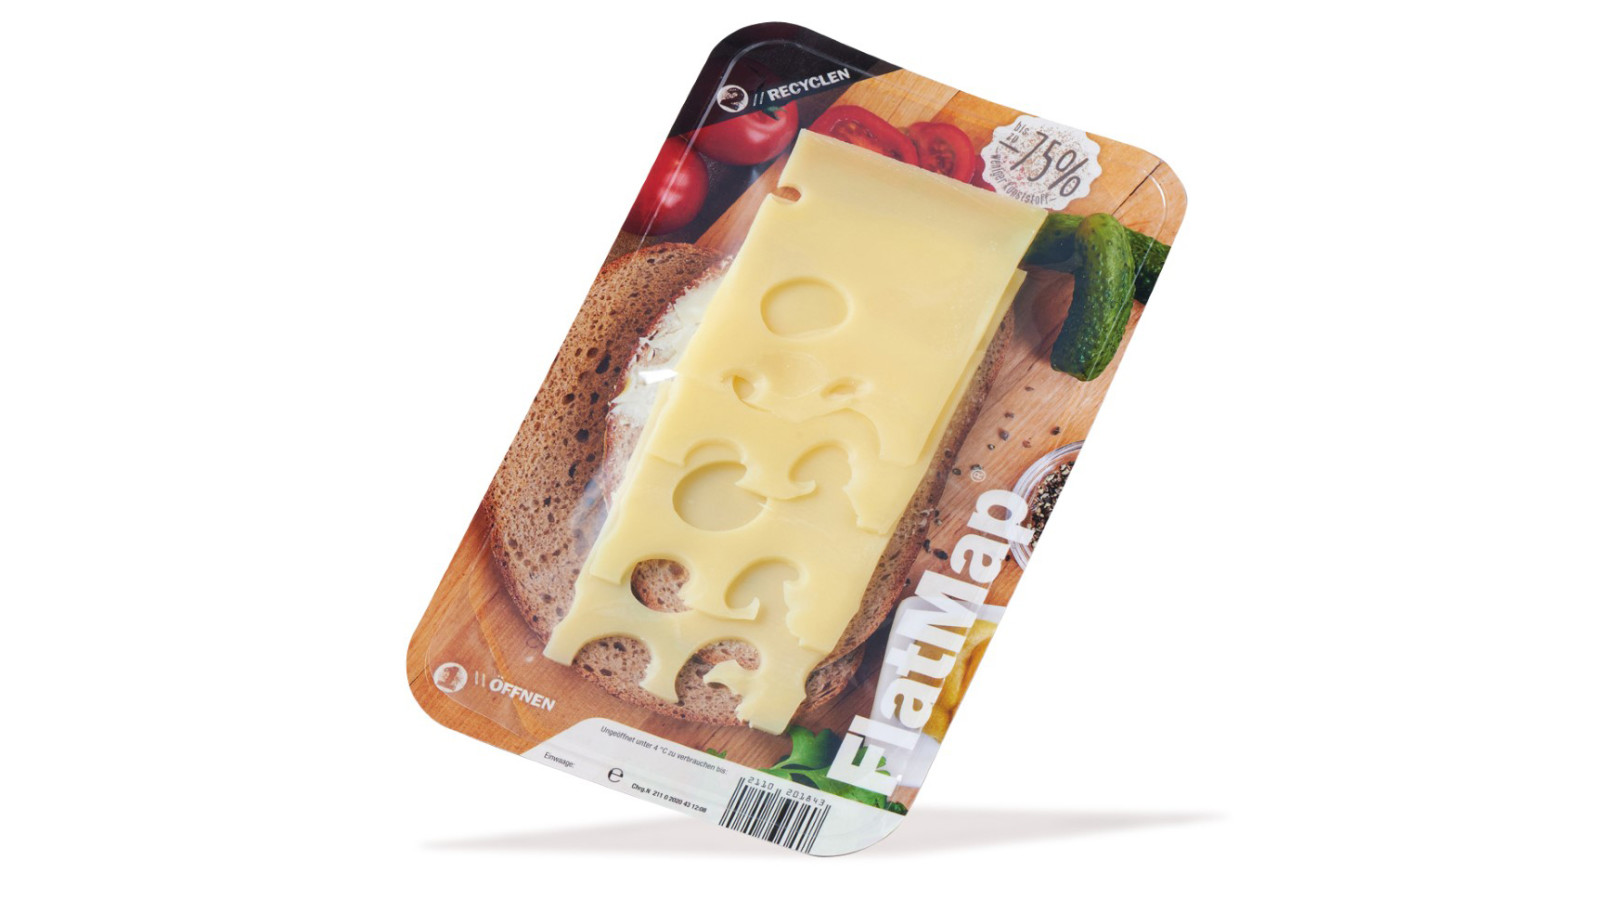 FlatMap från Nemco är den perfekta lösningen för att framhäva produkten i kylhyllan. Vi har ett brett utbud av ost- och mejeriprodukters förpackningar, varav flera av våra skinpack-produkter är återanvändbara eller plastreducerade.